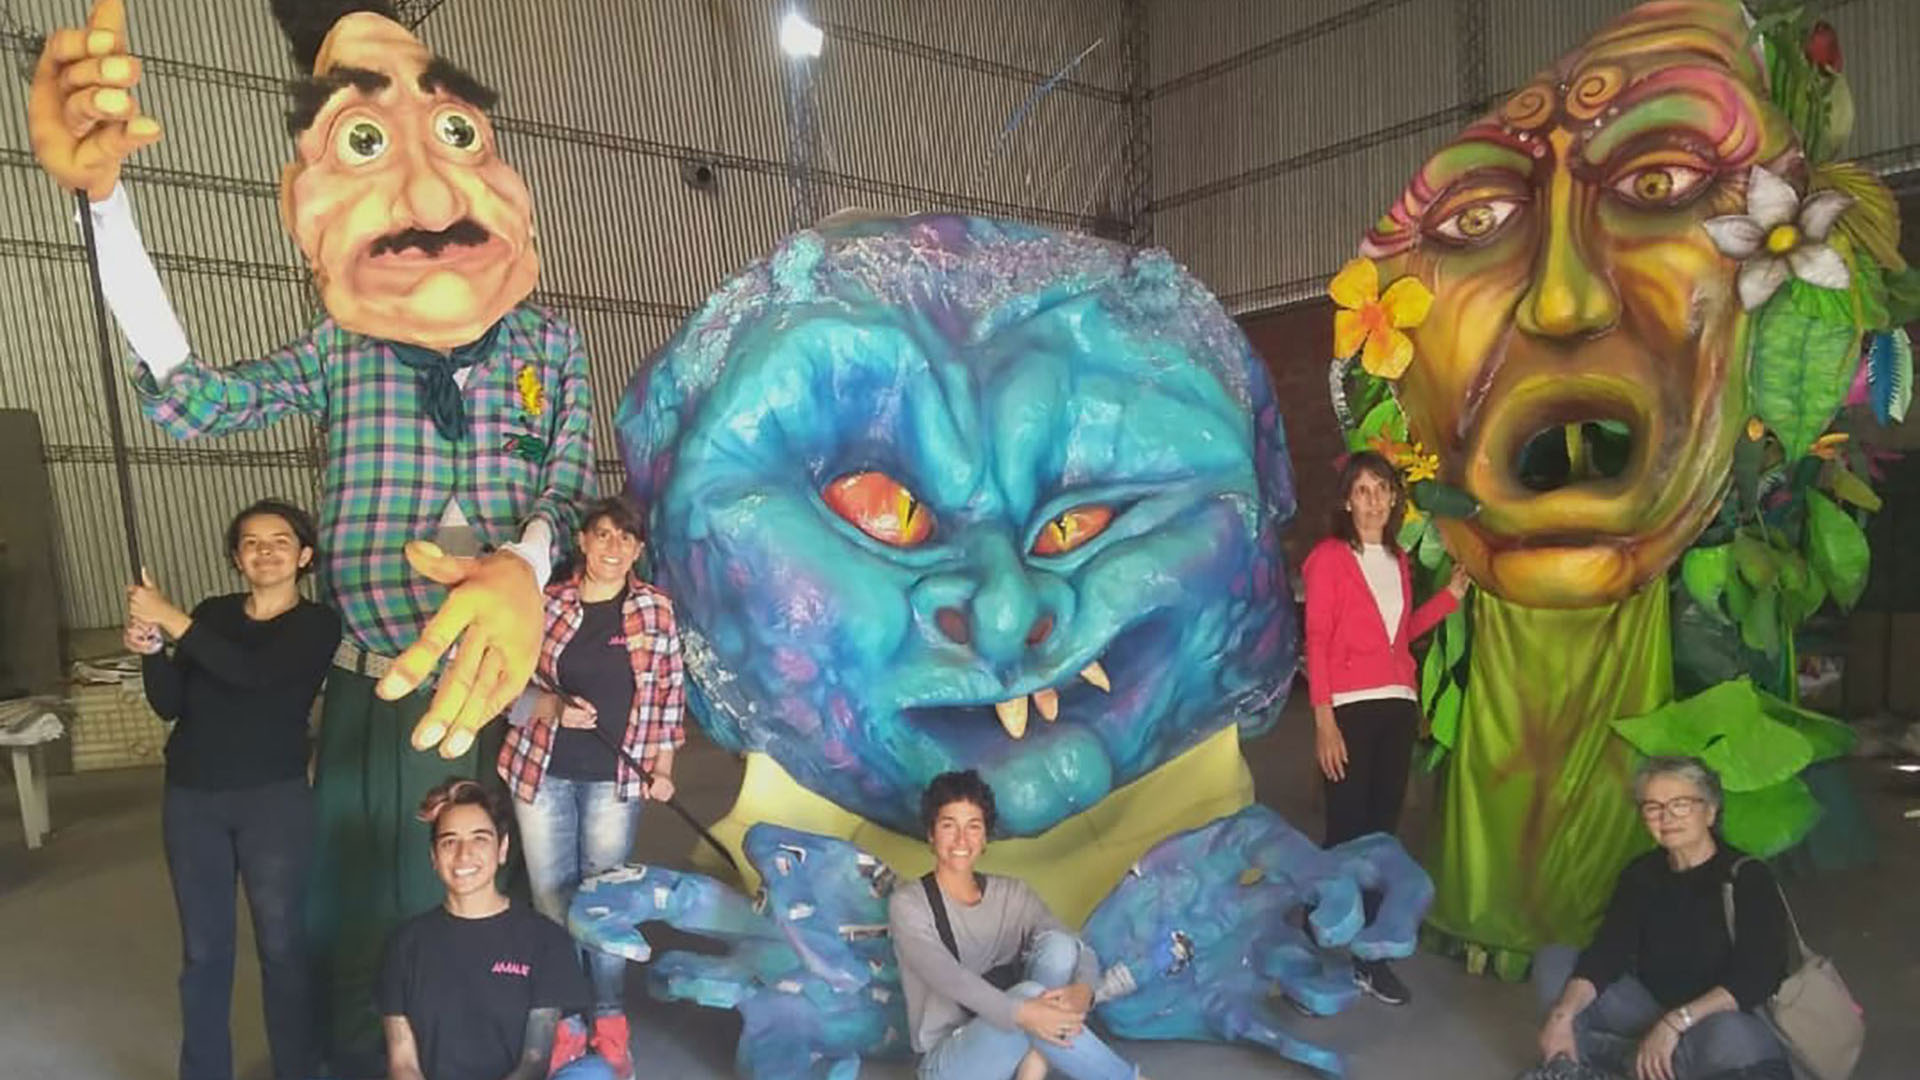 "Relaciones toxicas", las marionetas gigantes que le valieron el primer triunfo como mujeres carroceras en un carnaval (@amalaslincoln)